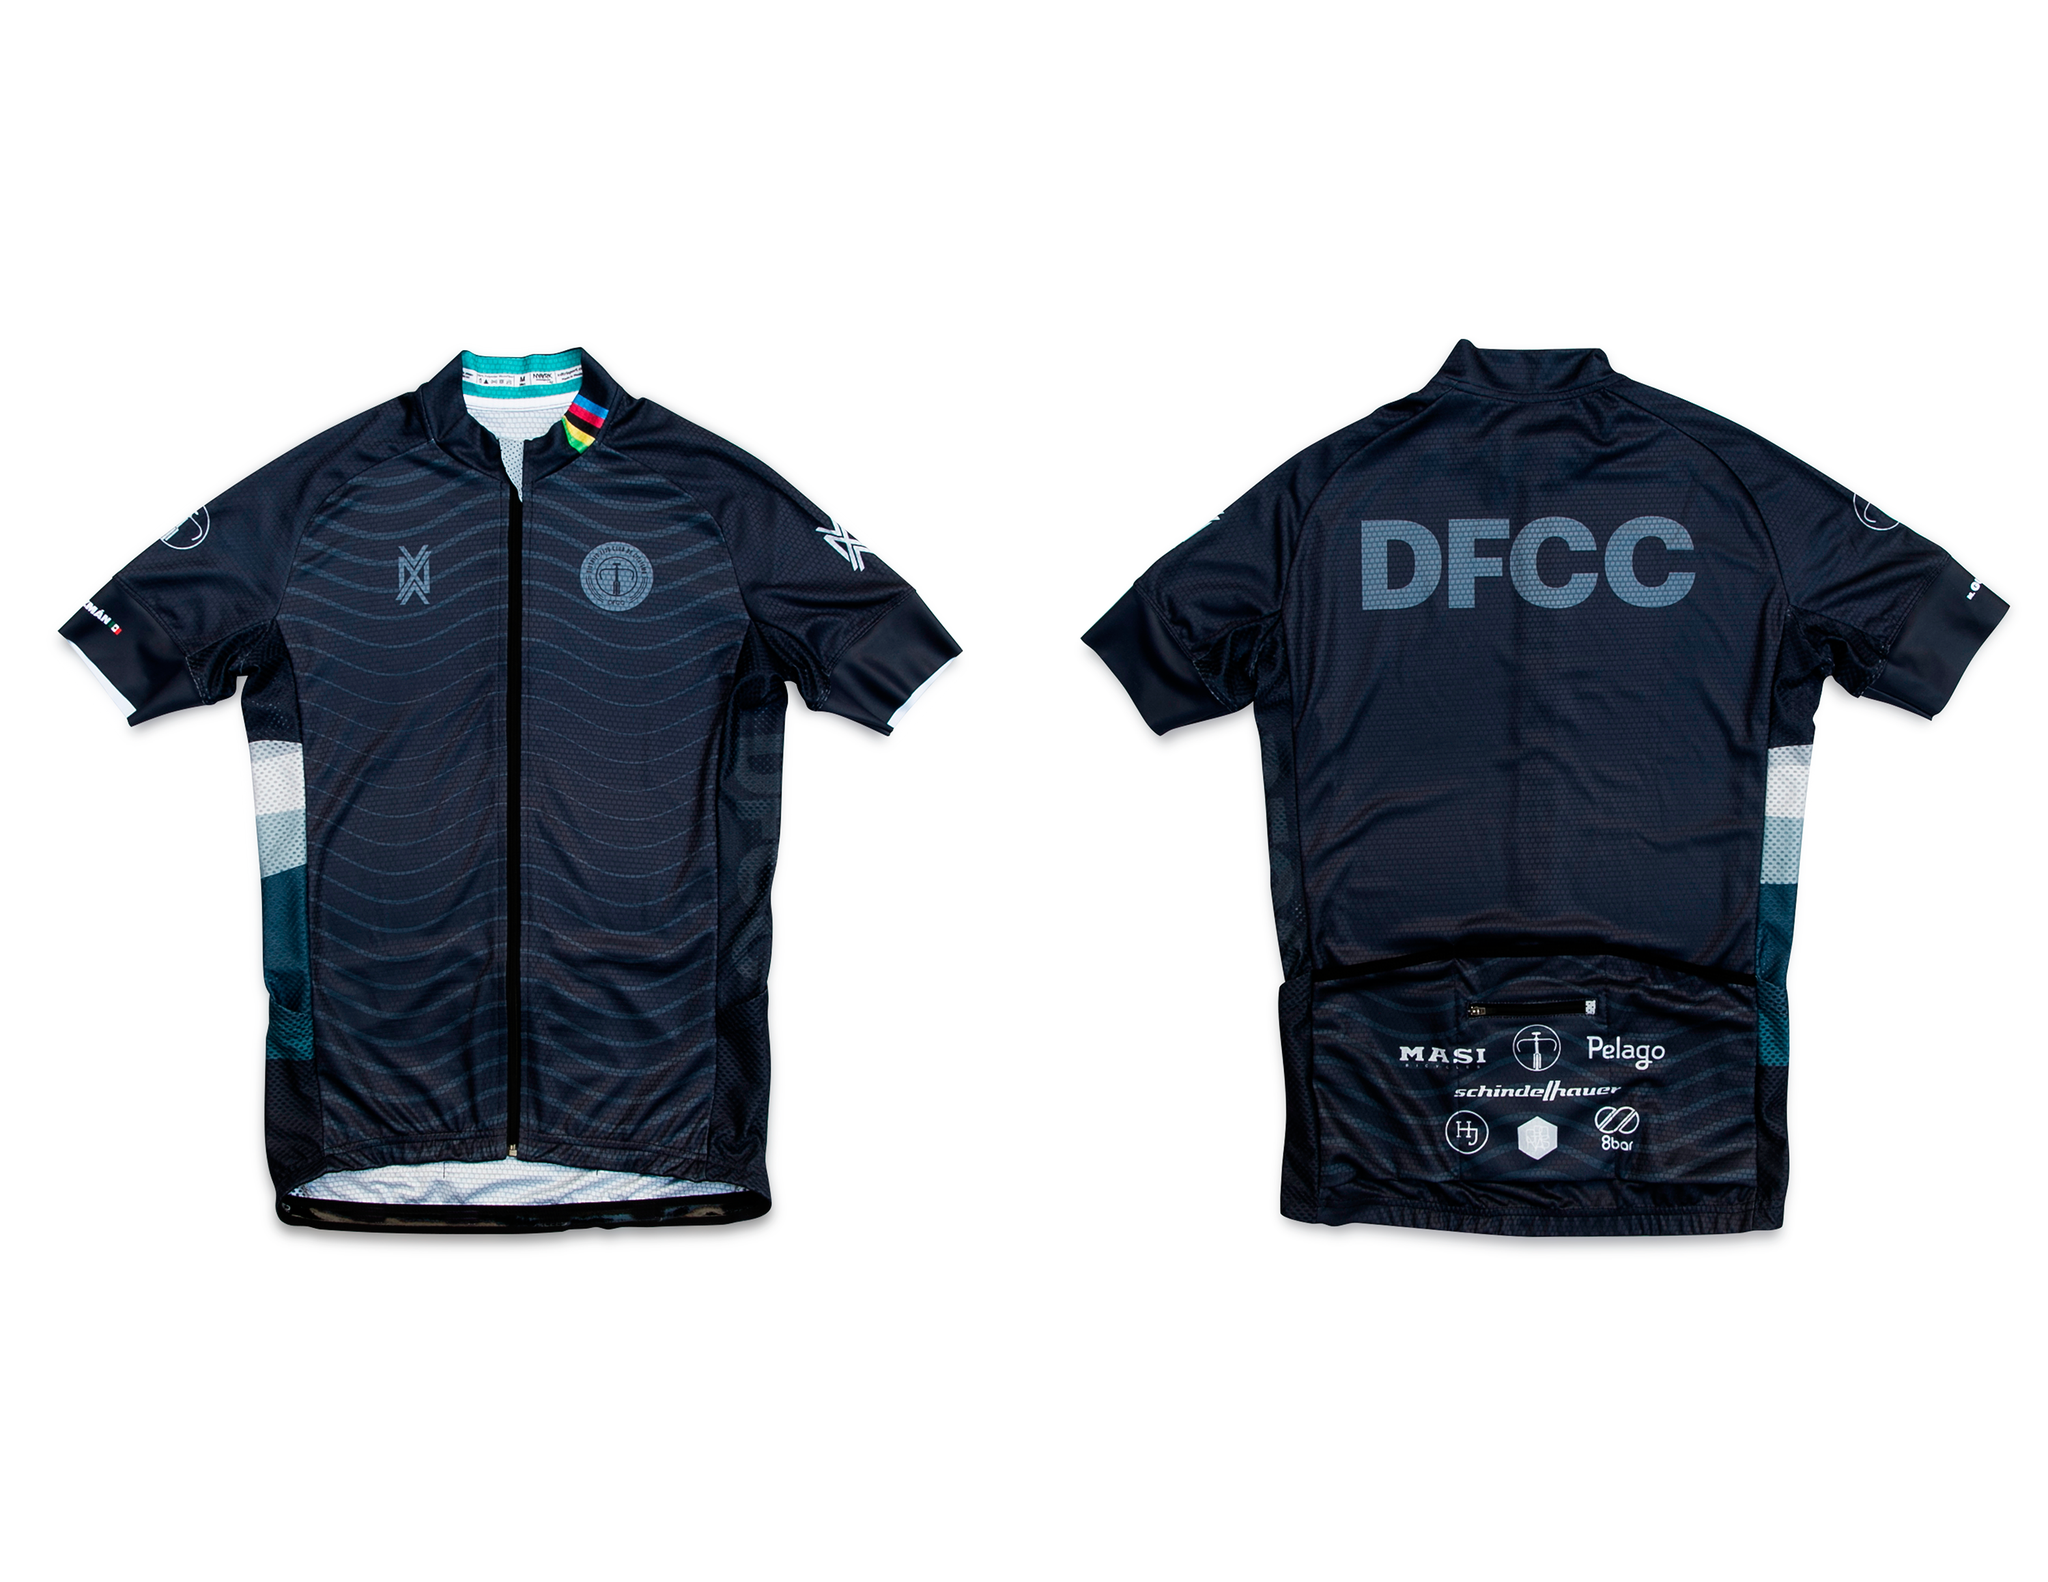 DFCC X NVAYRK Cycling Kit